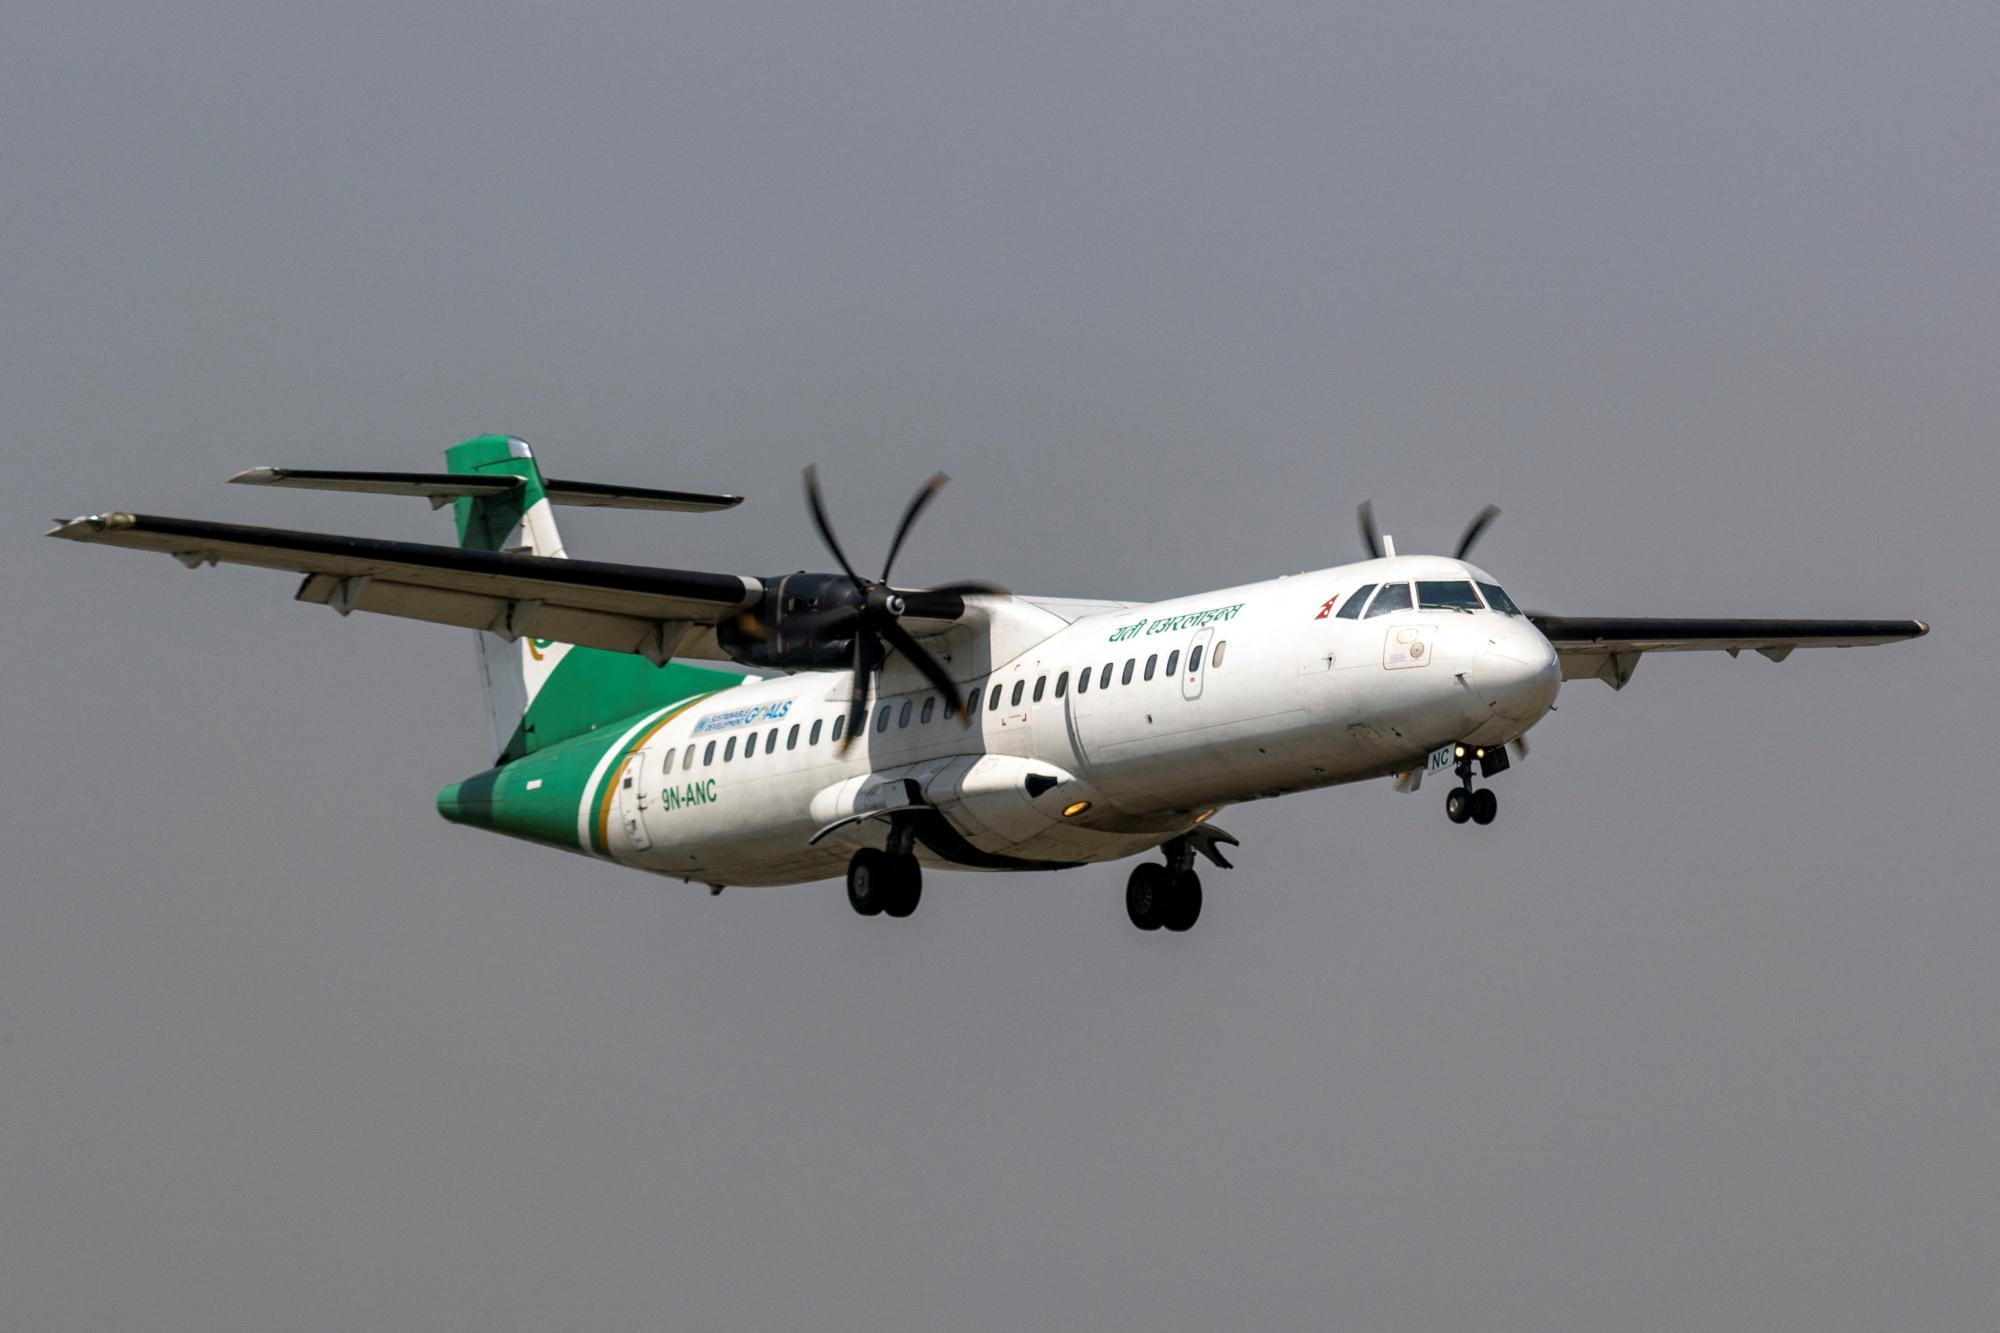 19 Tote bei Flugzeugabsturz in Nepal: Saurya Airlines Maschine verunglückt